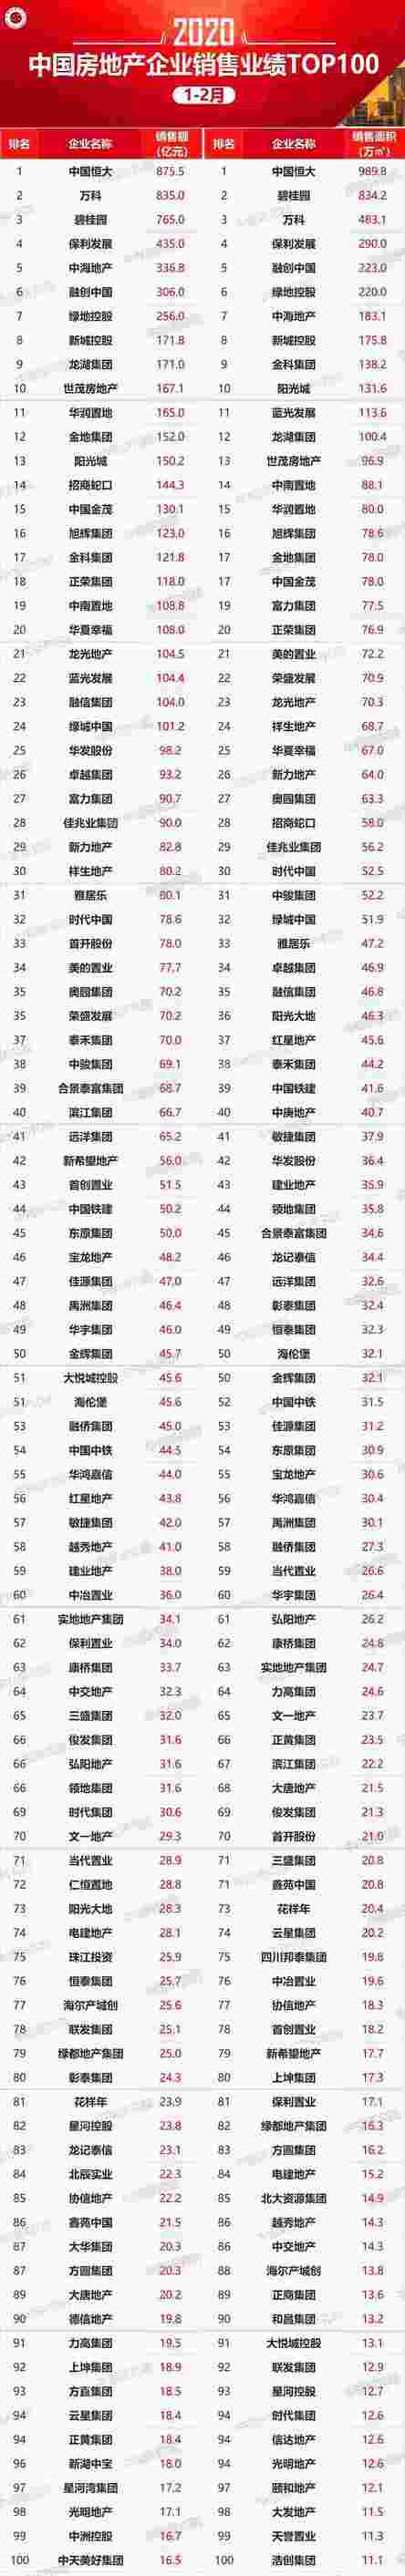 2020年1-2月中国房地产企业销售业绩TOP100